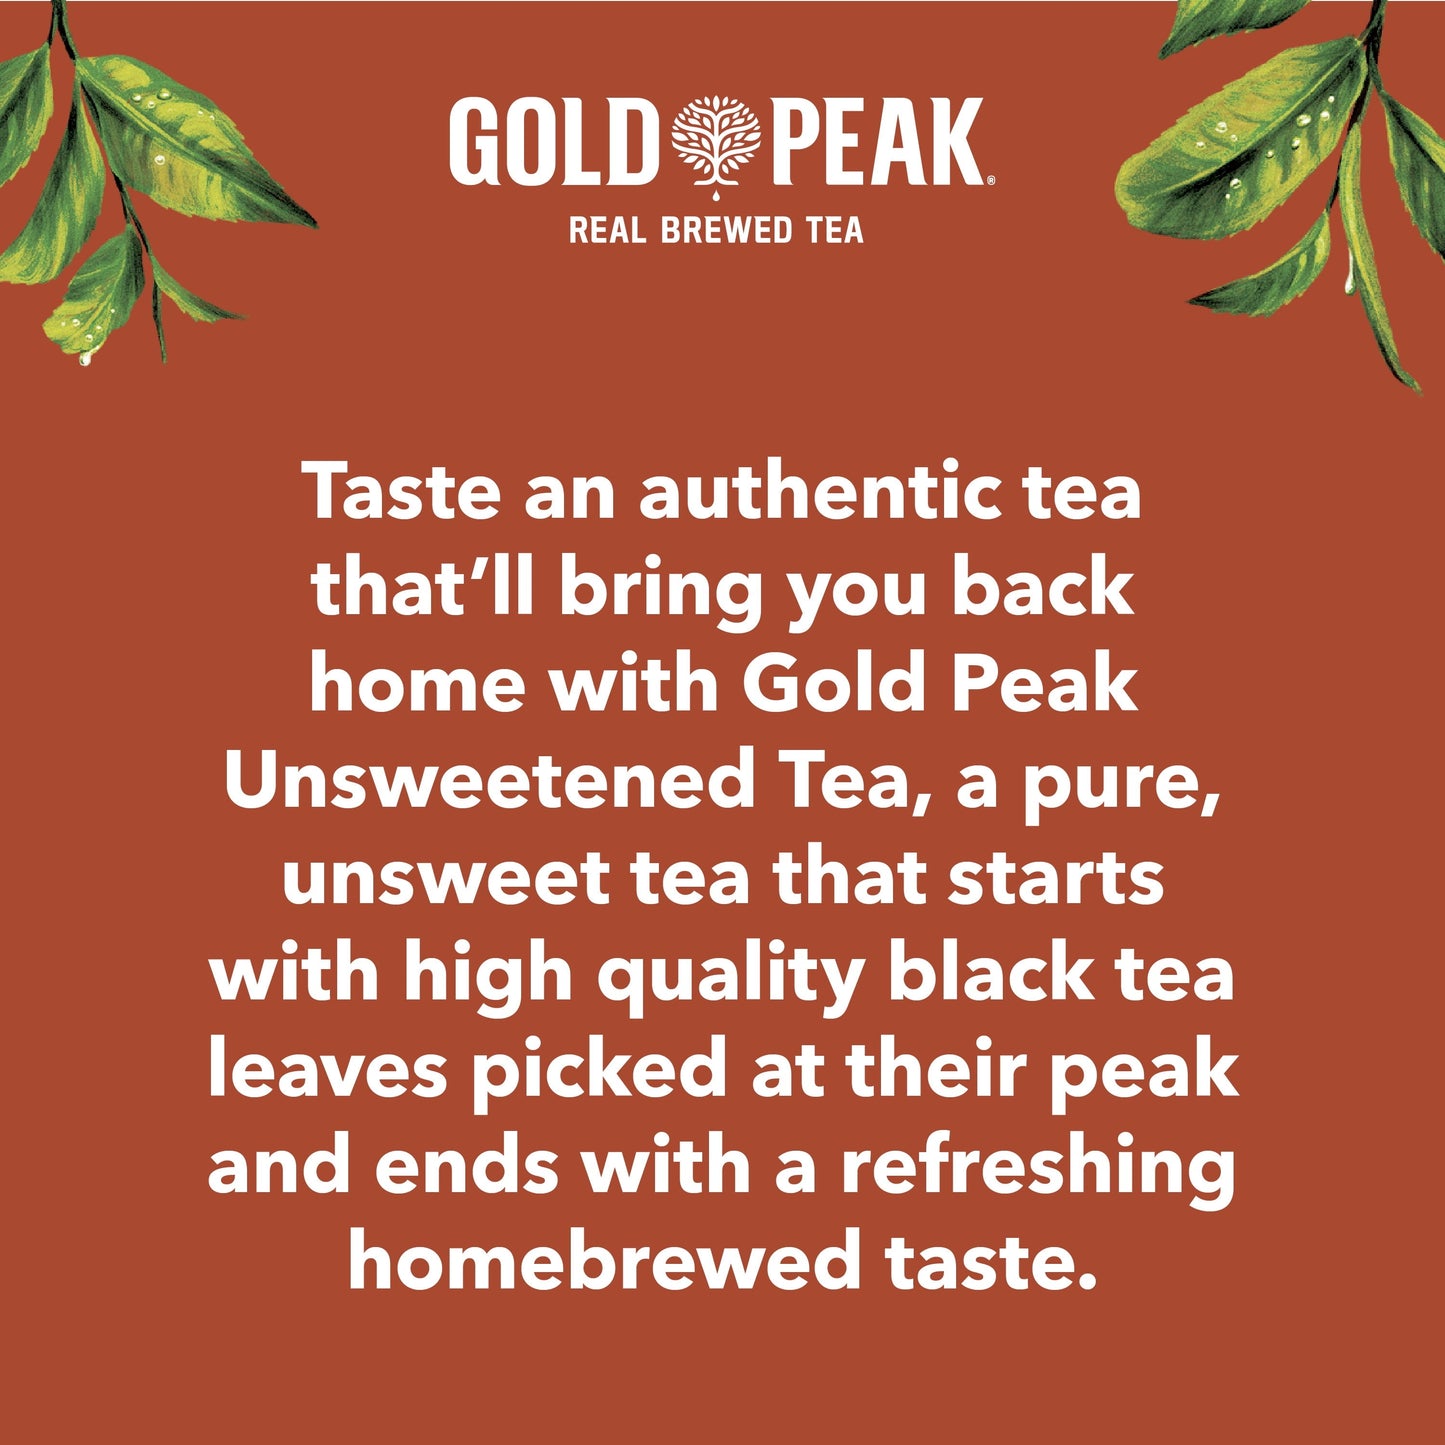 Gold Peak Real Brewed Tea Unsweetened, Black Iced Tea Drink, 89 fl oz